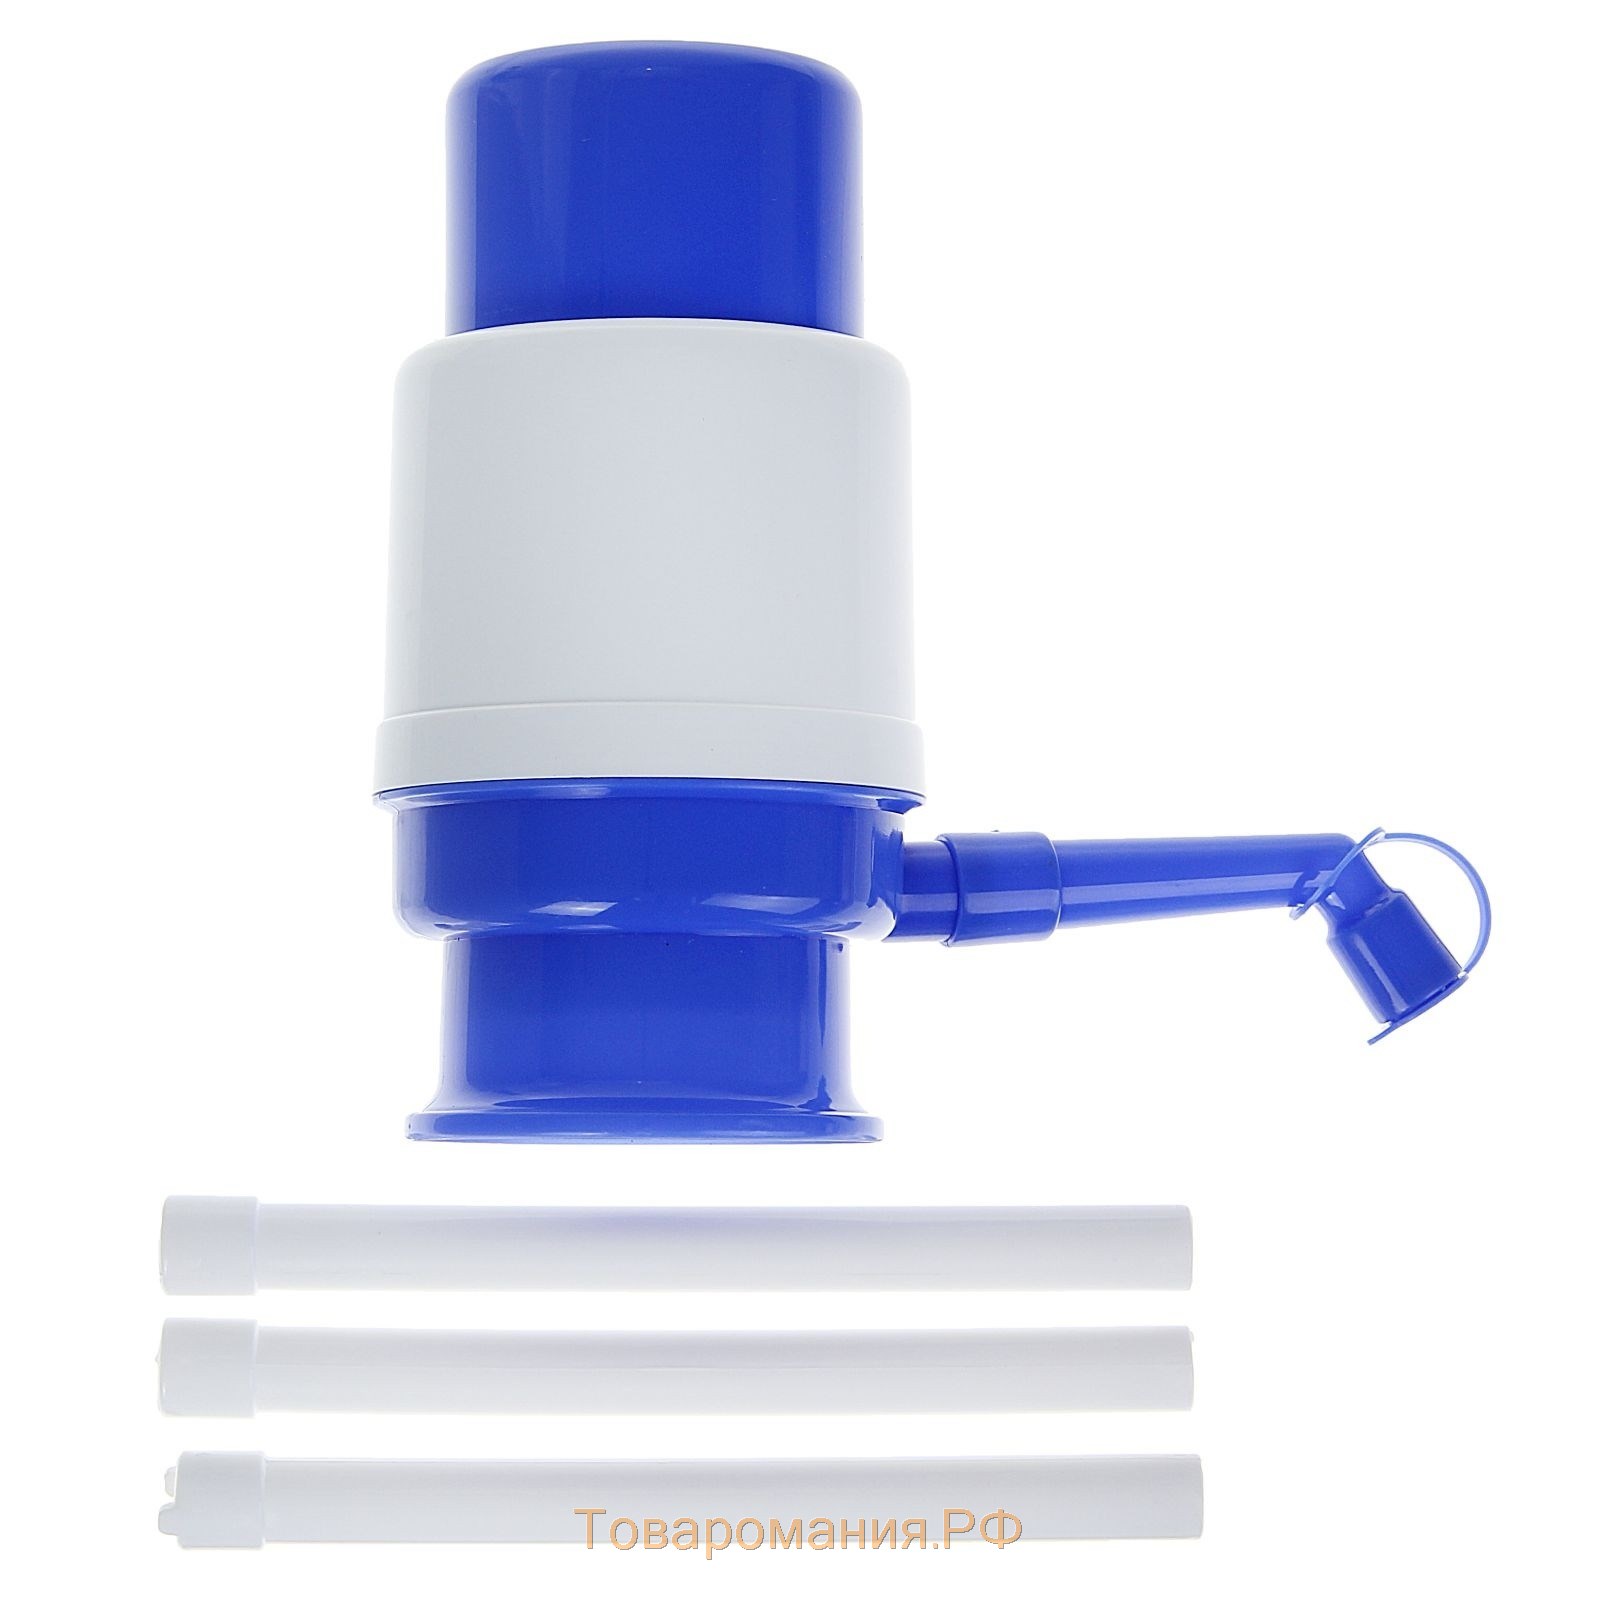 Помпа для воды LESOTO Mini, механическая, под бутыль от 11 до 19 л, голубая